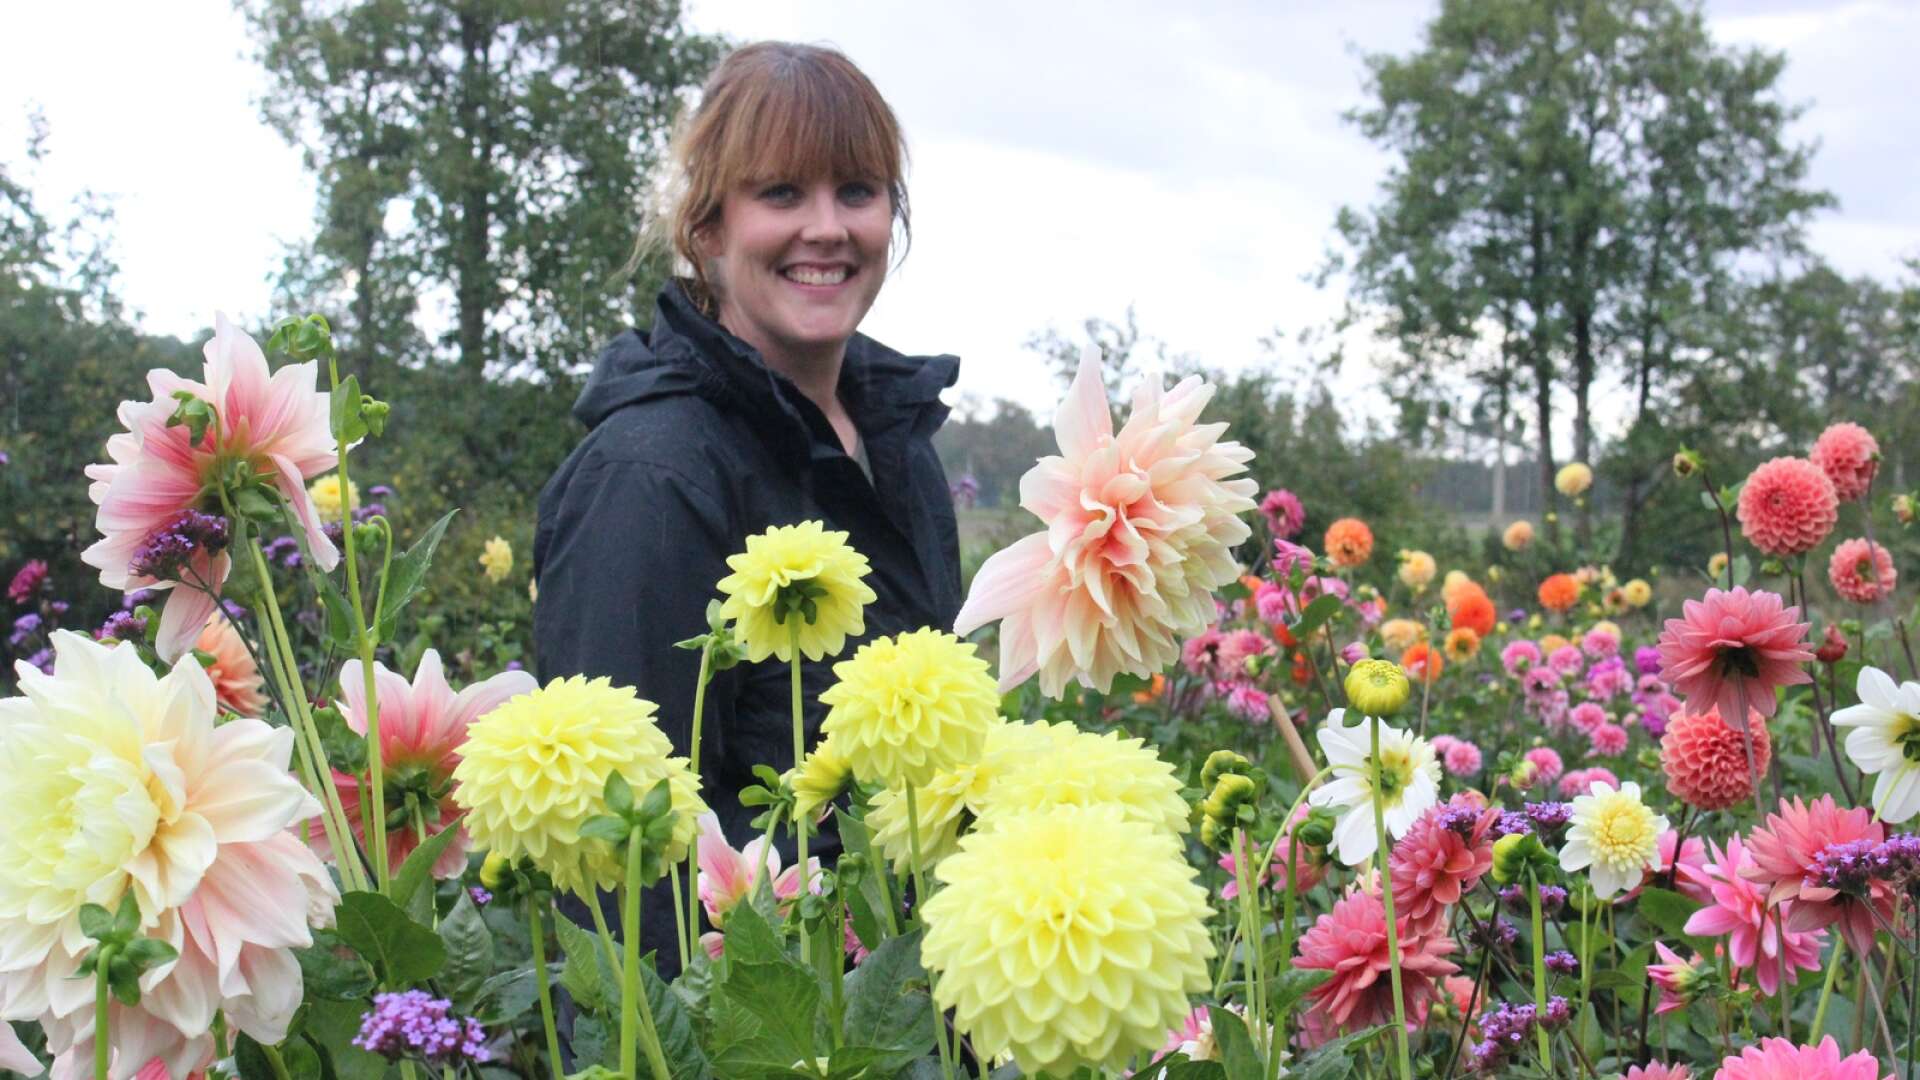 Therese Andersson är trädgårdsmästare och i fjol började hon med självplock av snittblommor hemma på Koppargården utanför Arentorp.